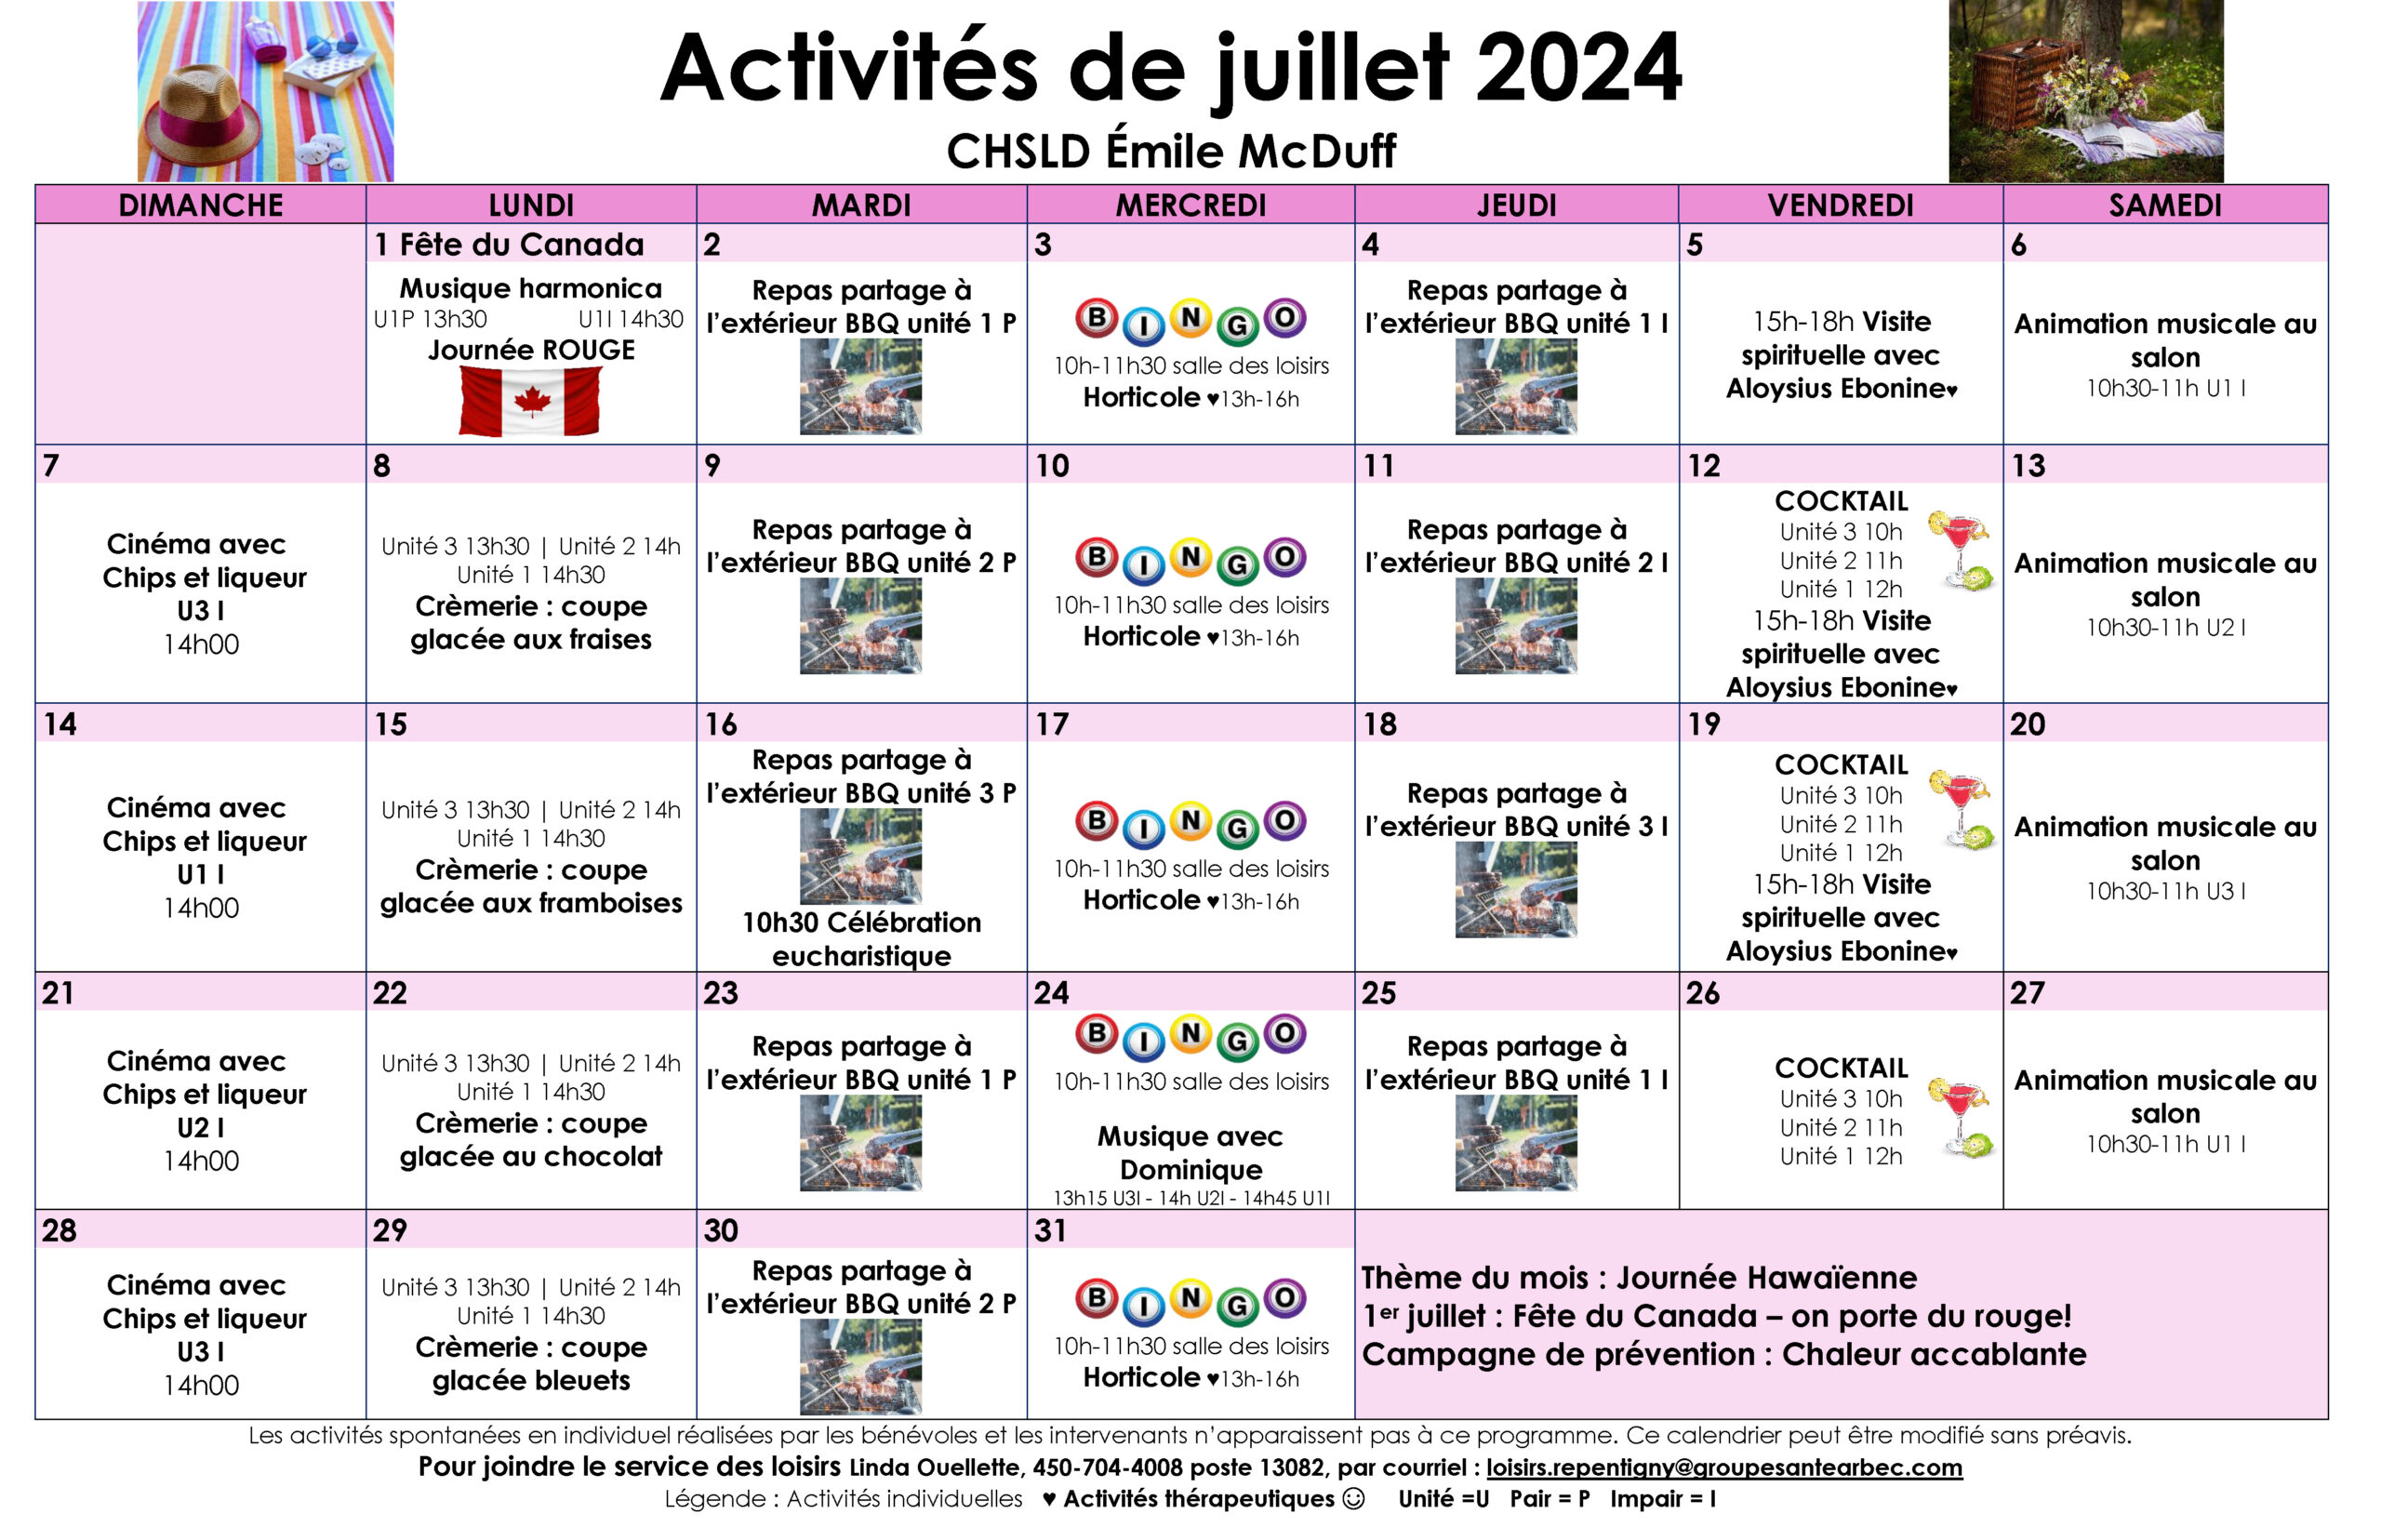 Calendrier des loisirs du mois de juillet 2024 pour les résidents du CHSLD Émile McDuff